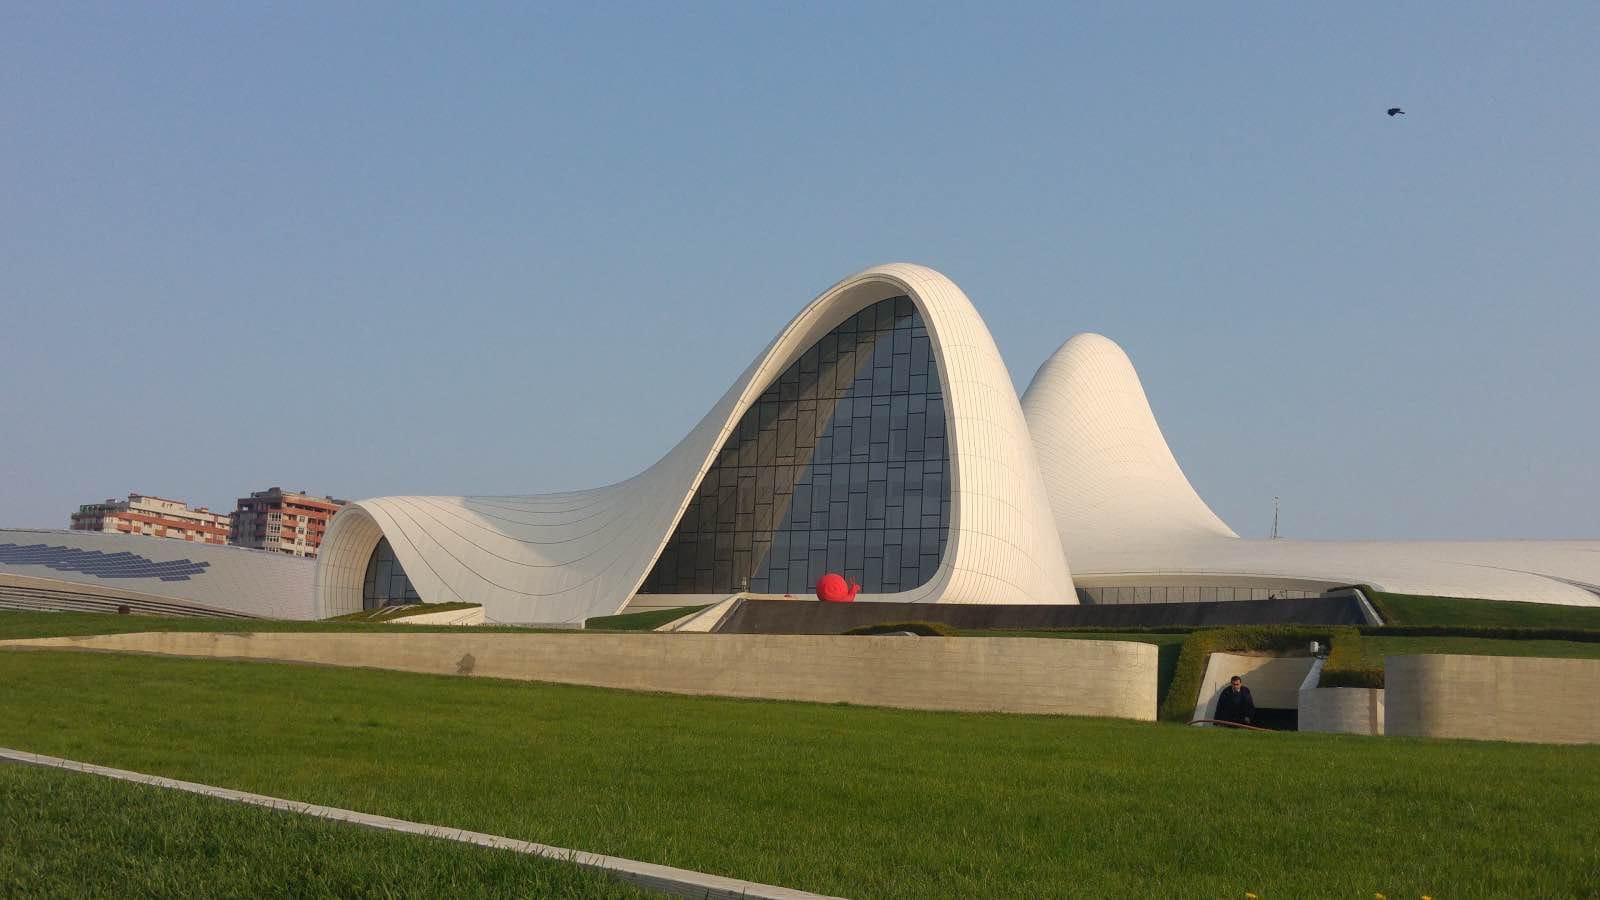 Centro Cultural Heydar-Aliyev en Bakú, obra de Zaha Hadid Architects. arquitectura contemporánera